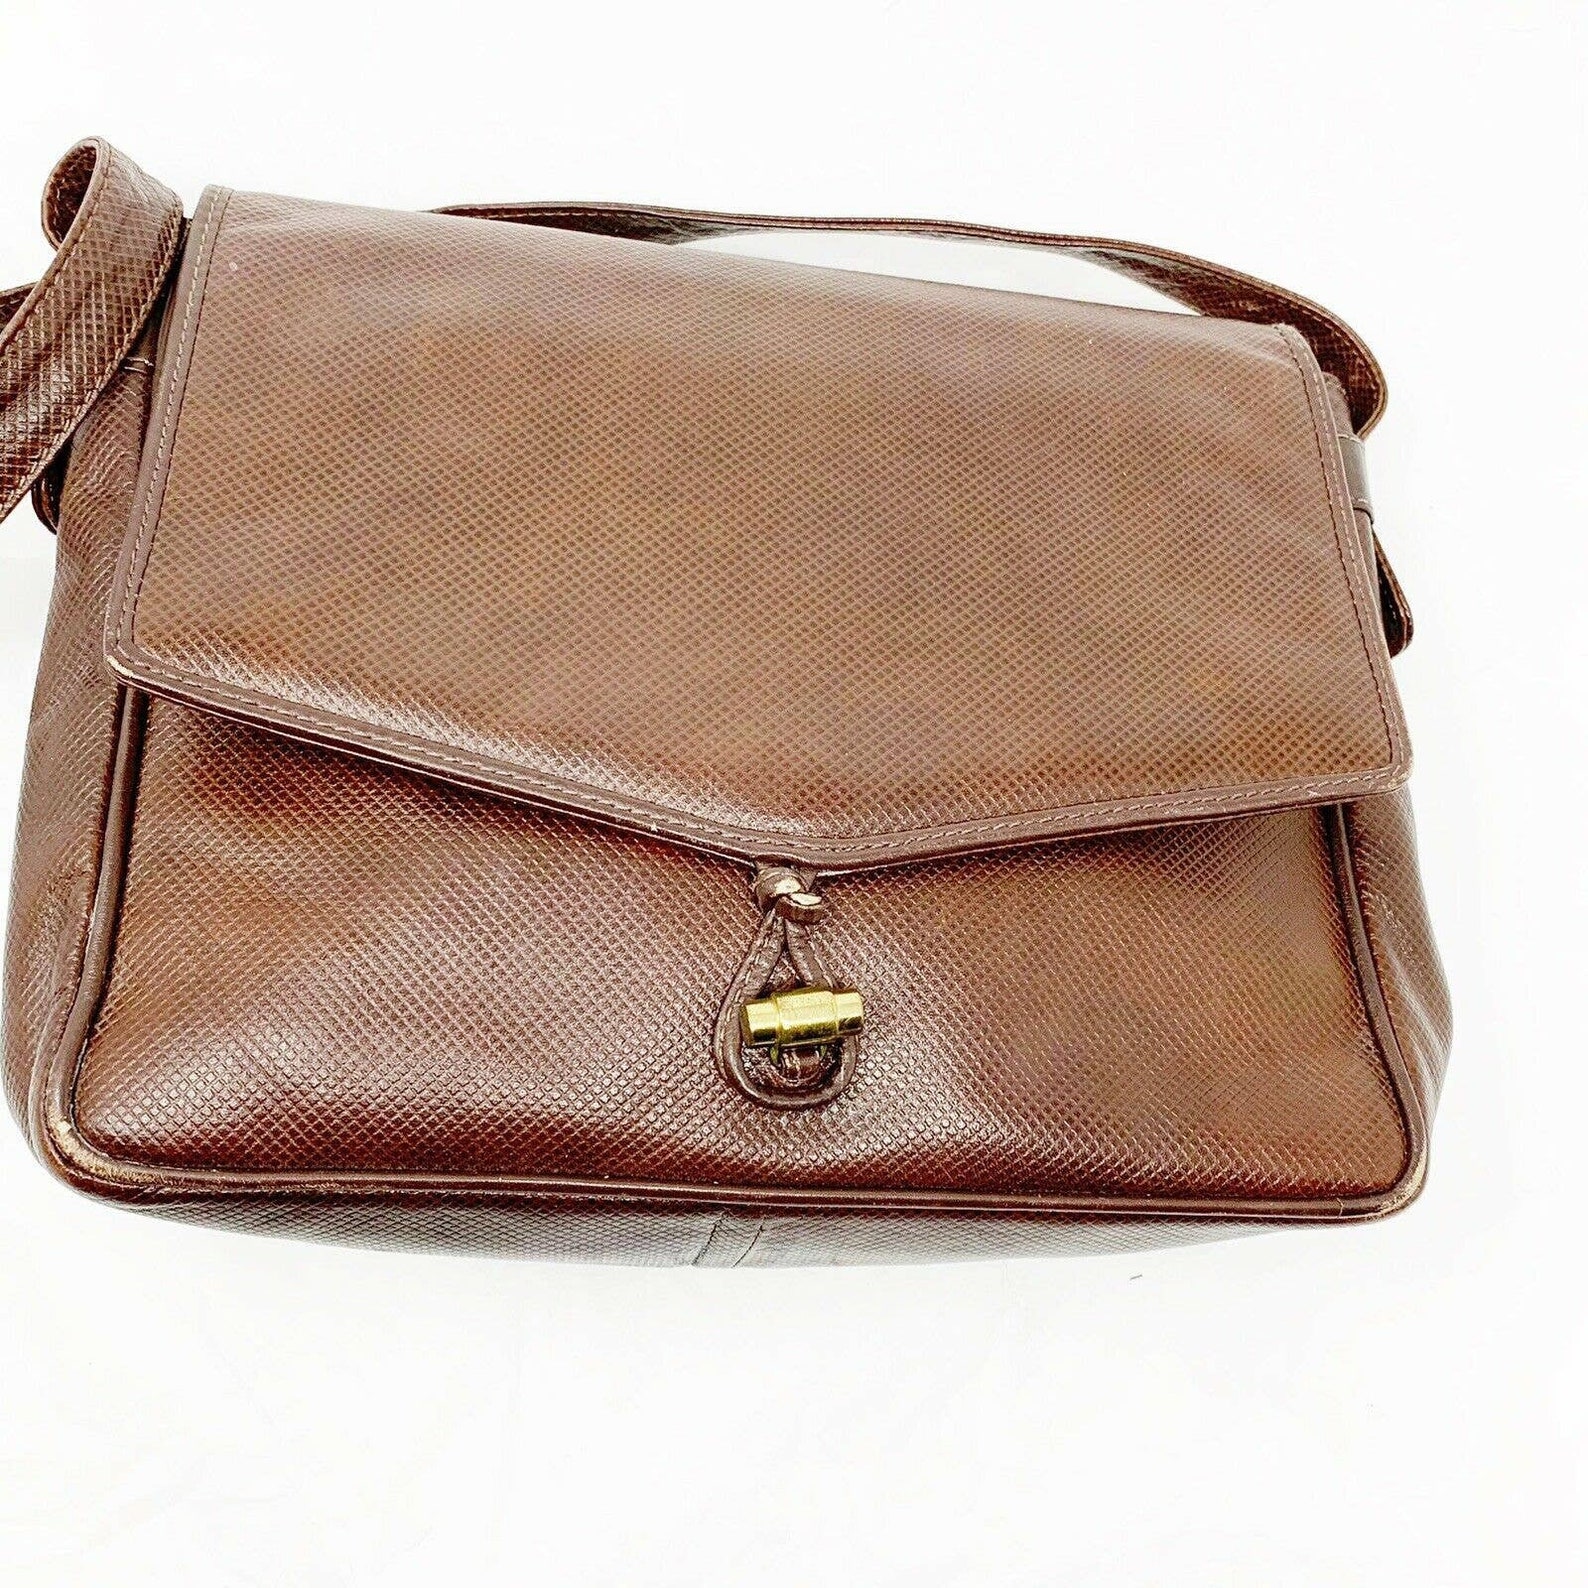 Vintage BOTTEGA VENETA Brown leather shoulder bag handbag | Etsy